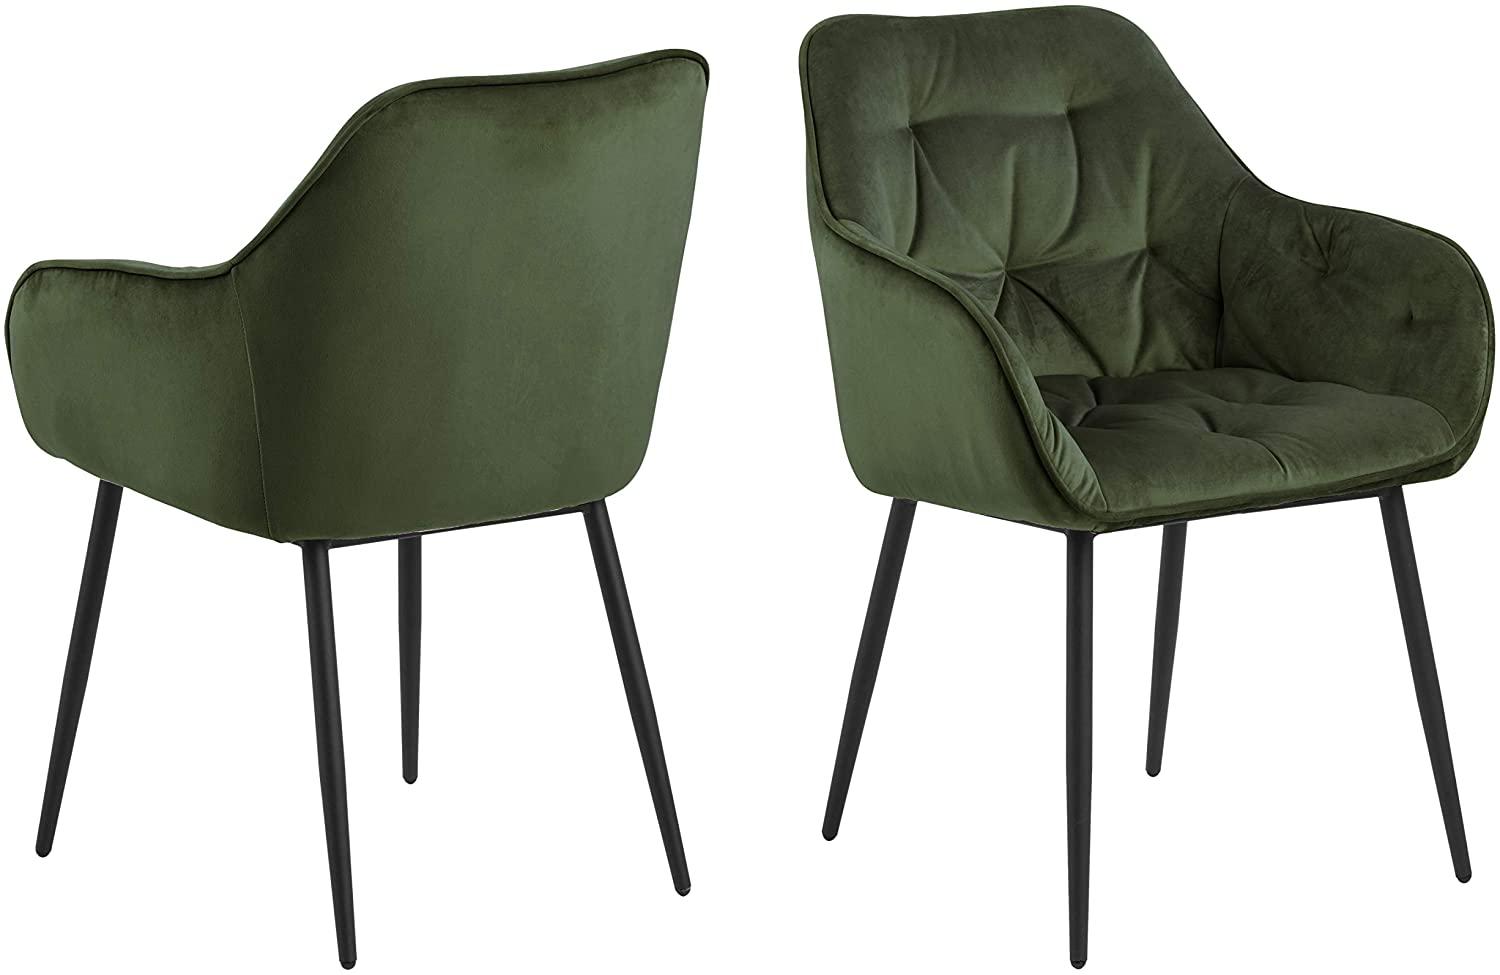 AC Design Furniture Bentley Carver Esszimmerstühle 2er Set, H: 83 x B: 58 x T: 55 cm, Waldgrün/Schwarz, Samt/Metall, 2 Stk Bild 1